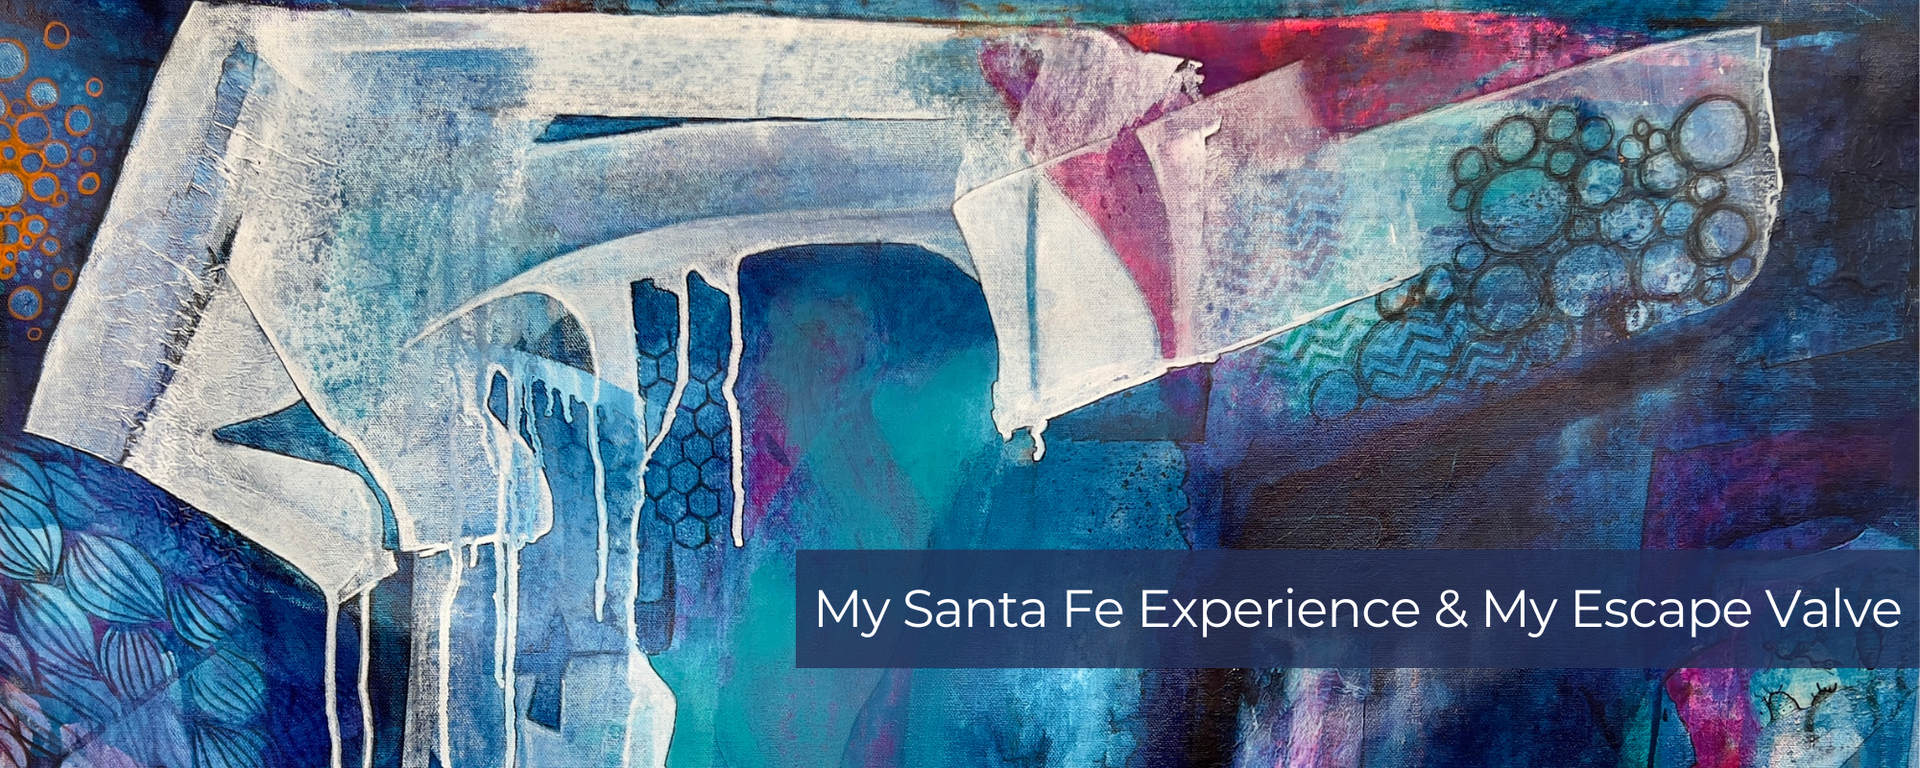 My Santa Fe Experience & My Escape Valve